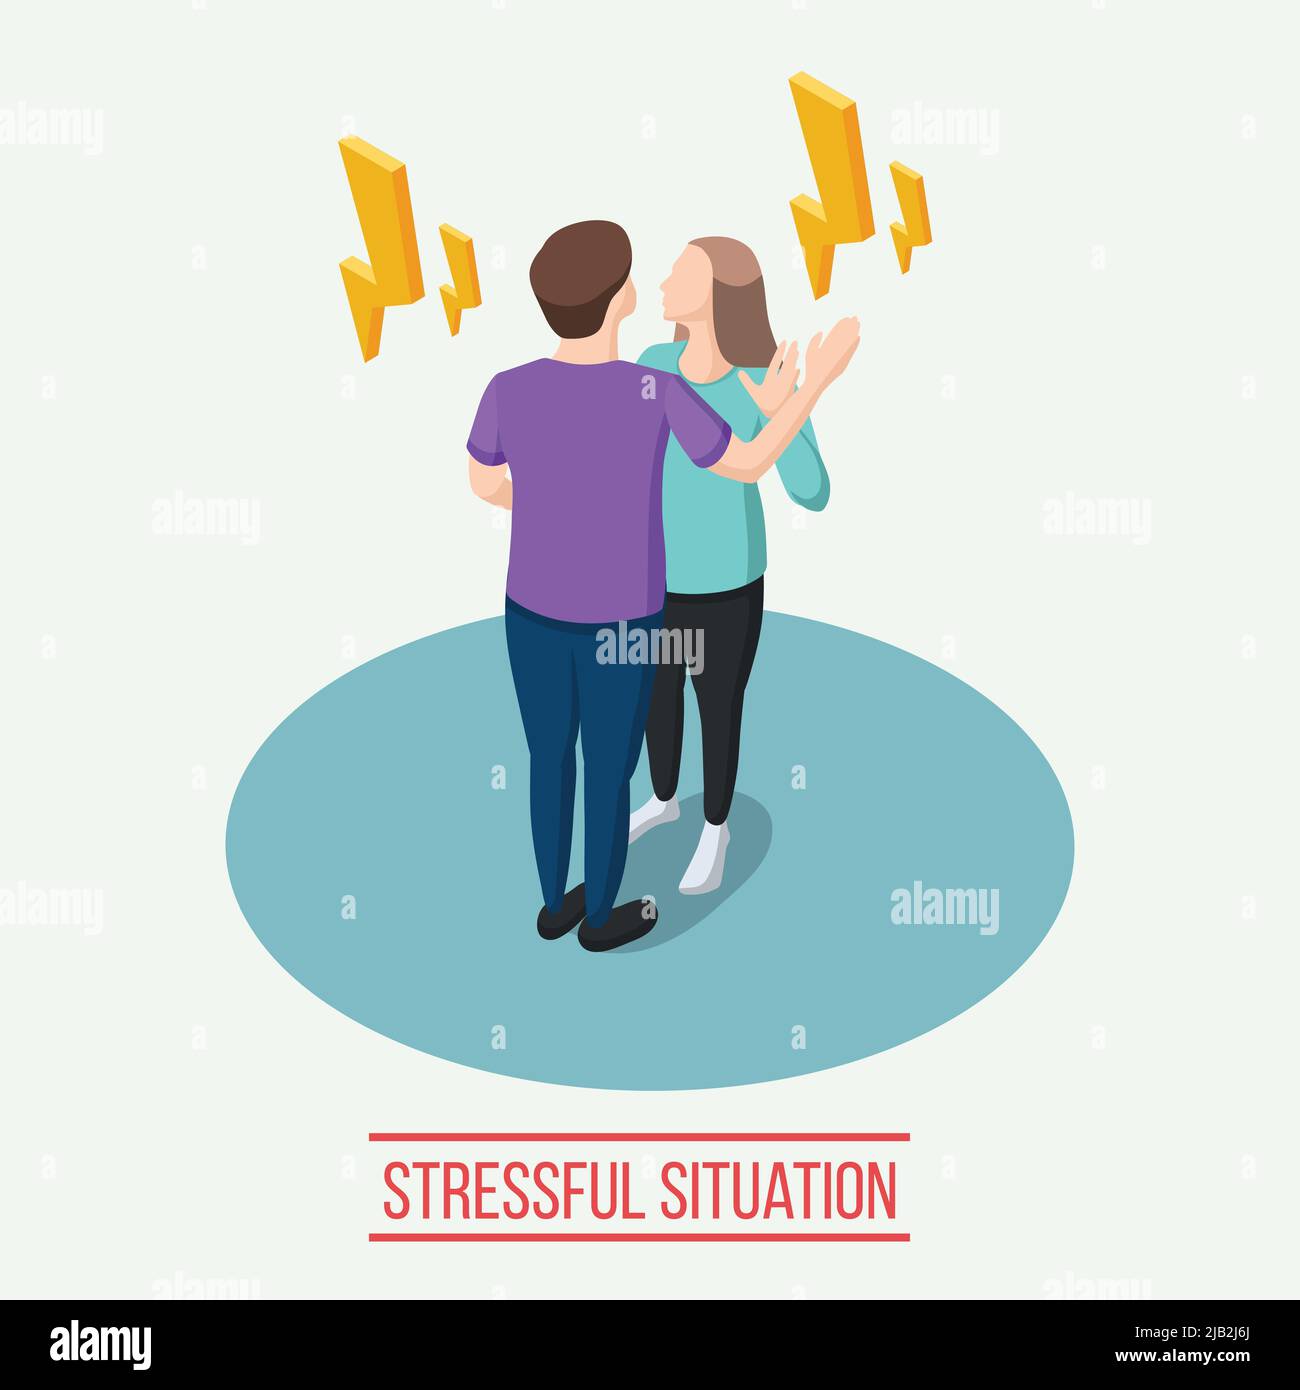 Stressige Situation isometrische Zusammensetzung mit gelben Blitzen um Mann und Frau während der emotionalen Kommunikation Vektor Illustration Stock Vektor